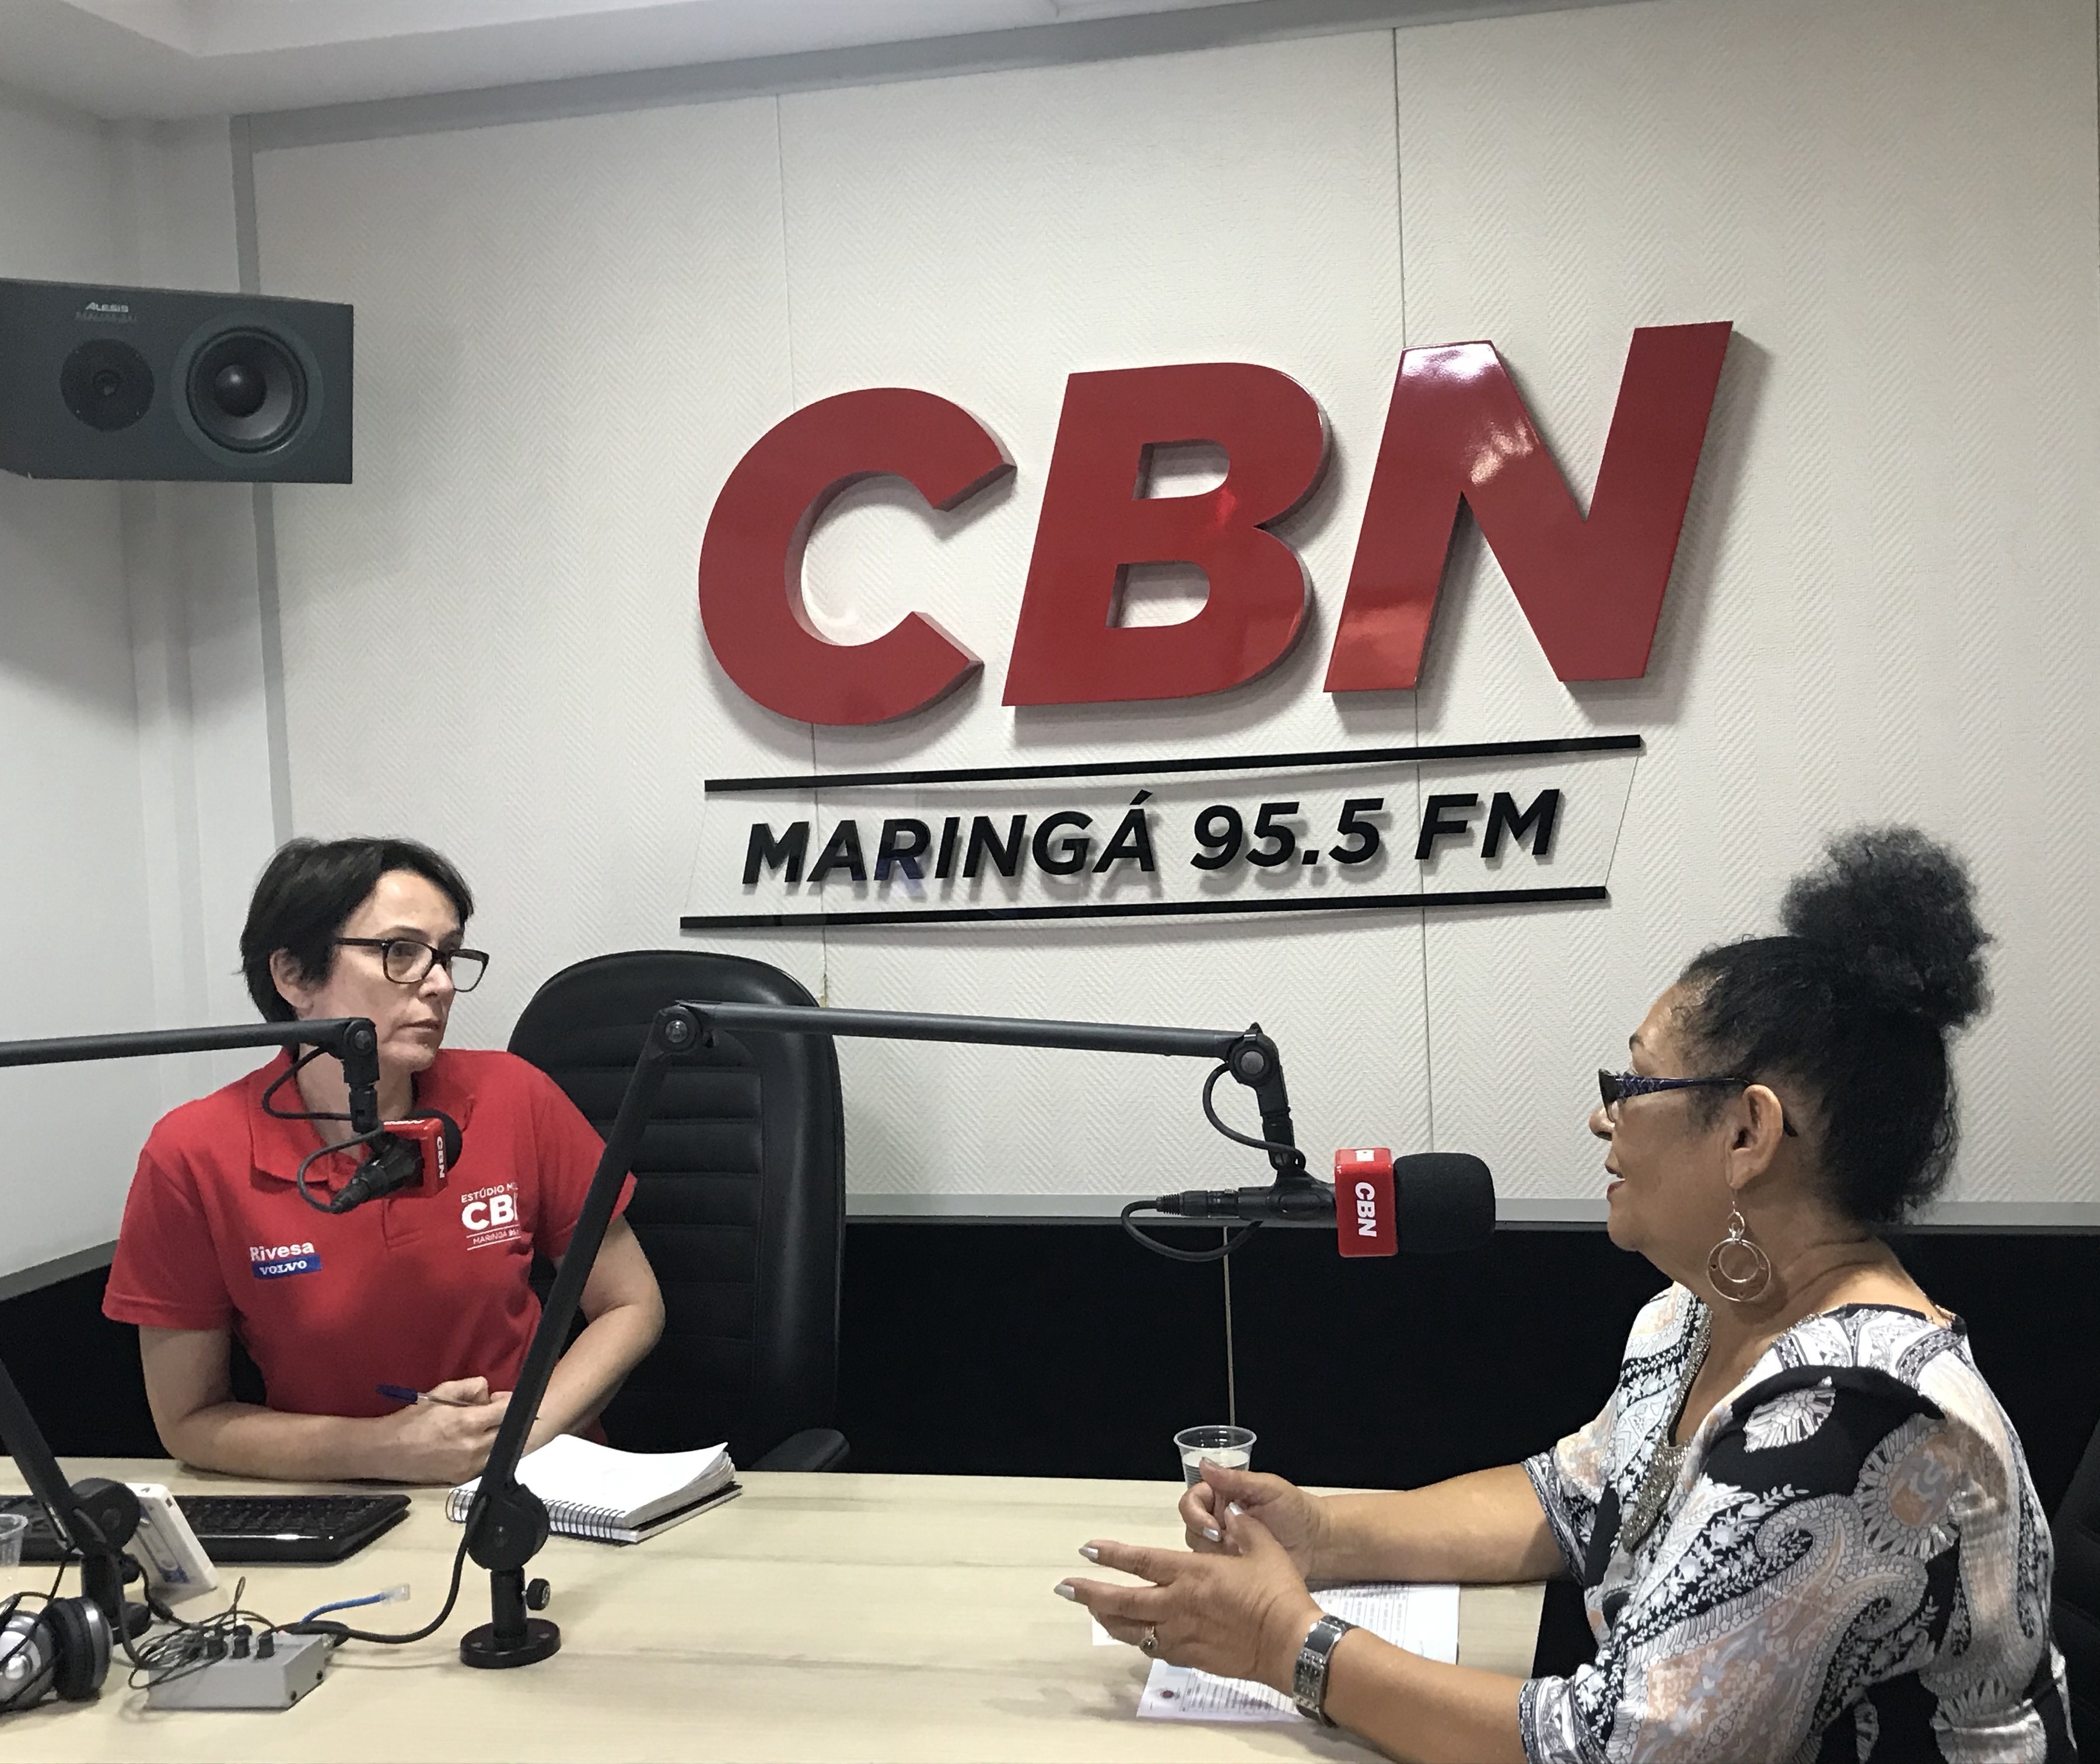 105 mulheres e crianças passaram pela Casa Abrigo de Maringá em 2017